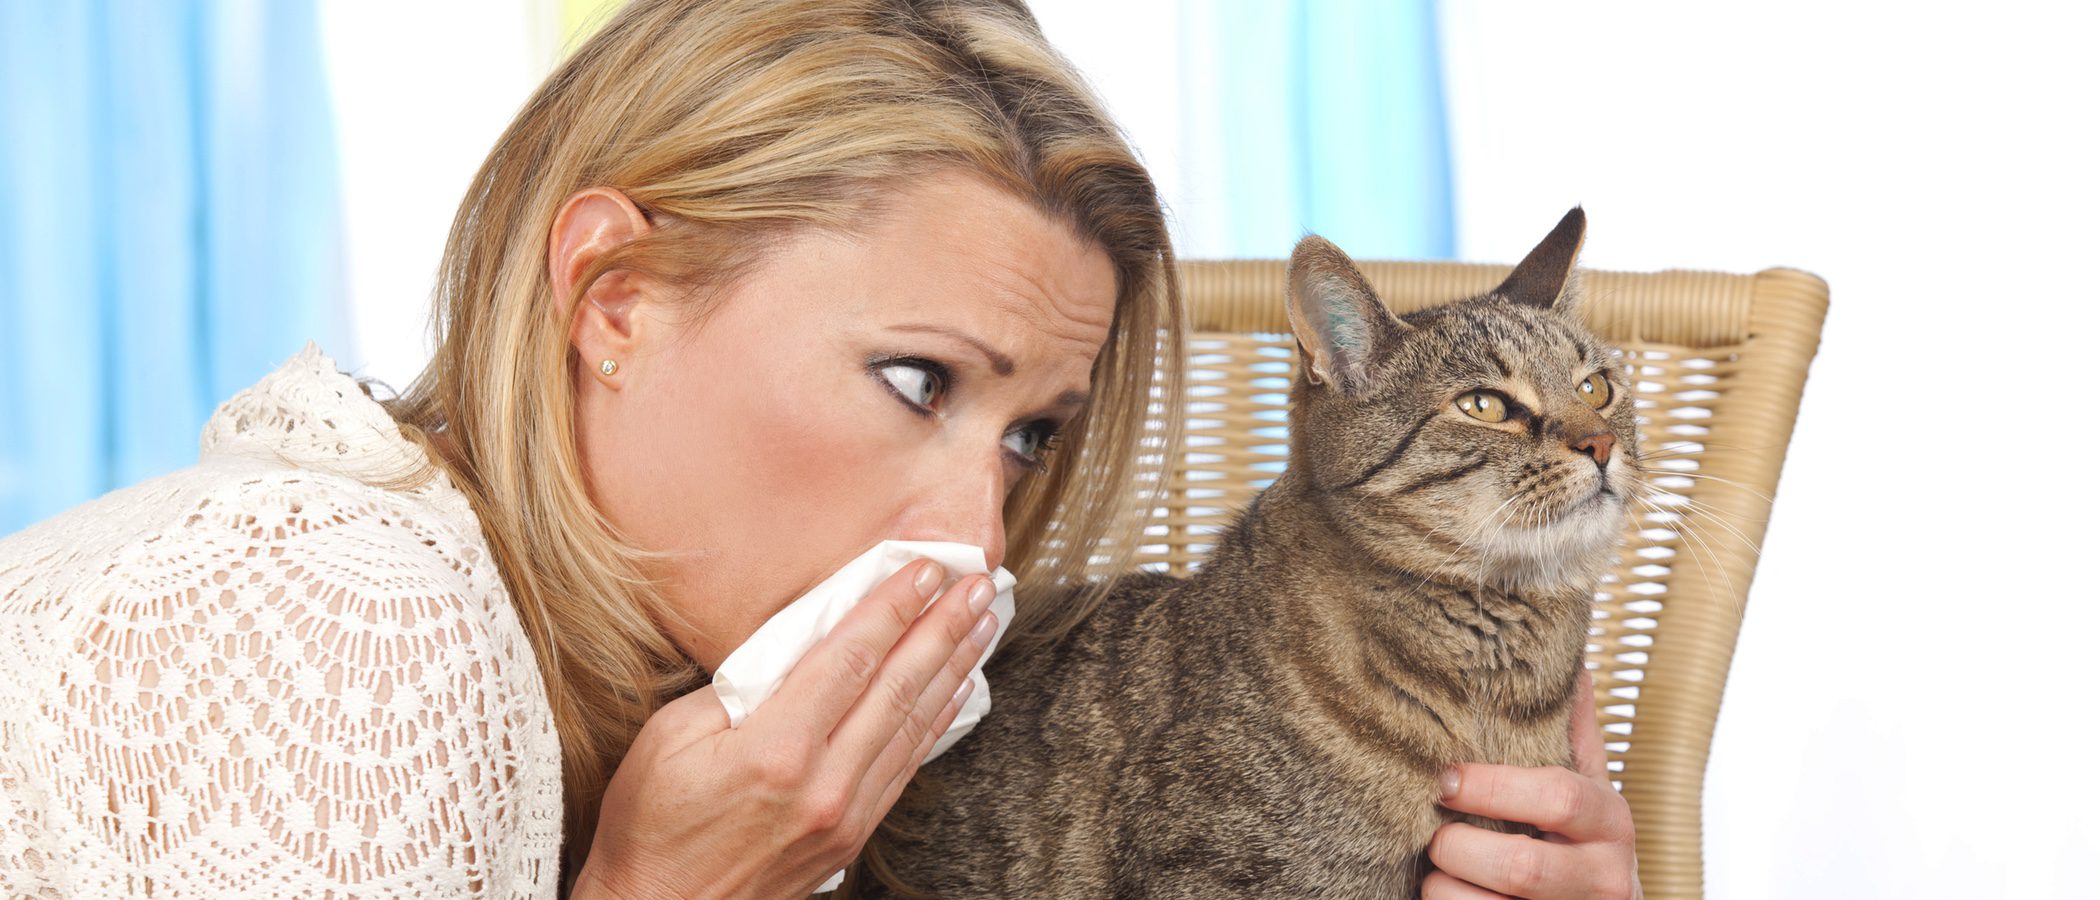 ¿Cómo convivo con mi gato si le tengo alergia?